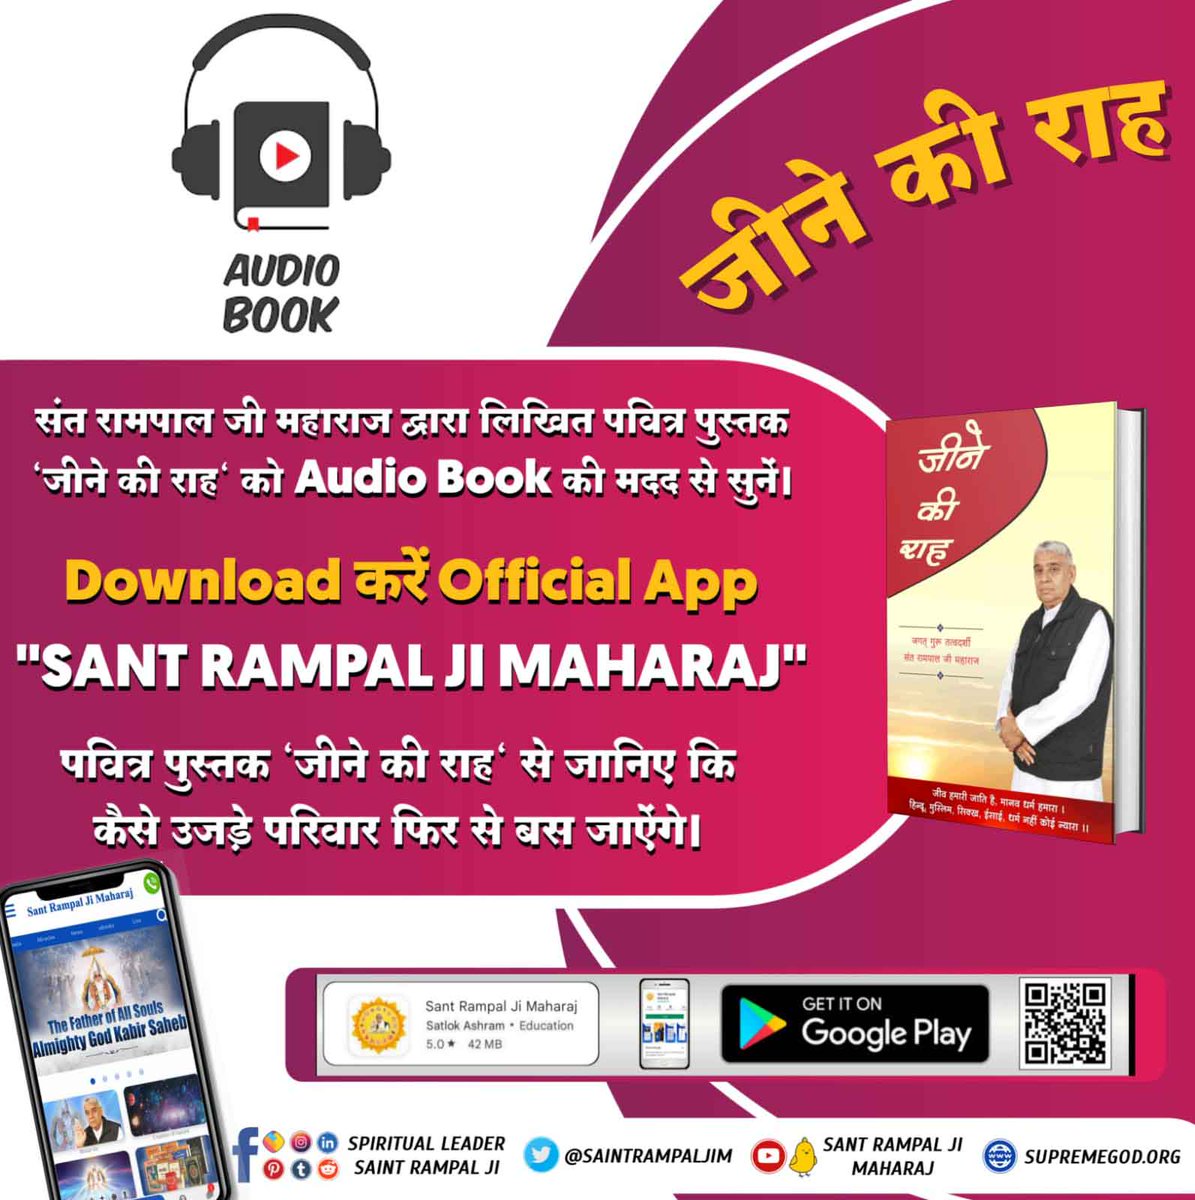 संत रामपाल जी महाराज द्वारा लिखित पवित्र पुस्तक 'जीने की राह' को Audio Book की मदद से सुनें। 
Audio Book Sant Rampal Ji Maharaj पर उपलब्ध है।

#AudioBook_JeeneKiRah

youtu.be/AcVvdNiRRZE?si…

➡️⛲ PlayStore से Install करें  :-
 'Sant Rampal Ji Maharaj' ऐप्प🙏